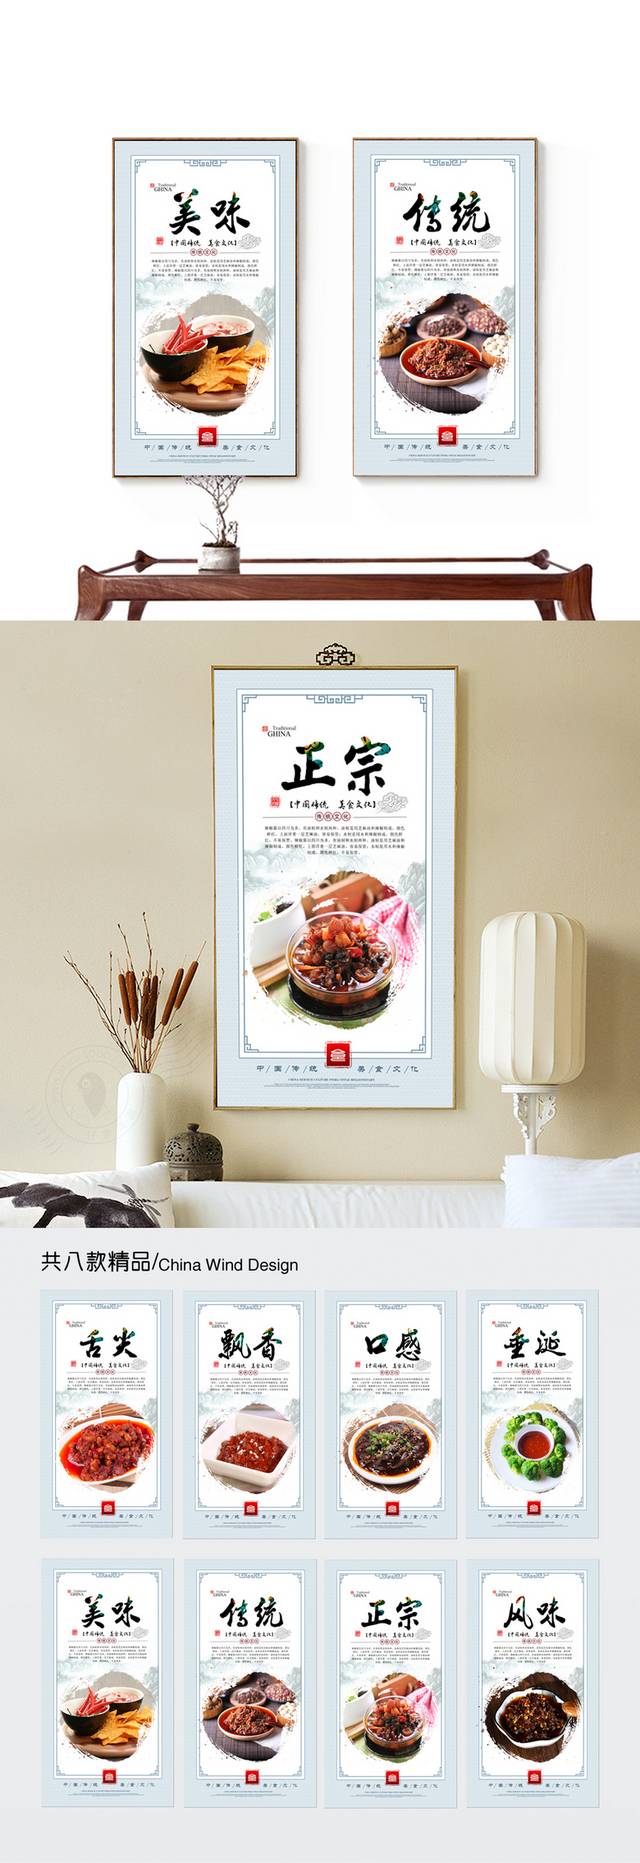 调味品辣椒酱文化宣传展板设计